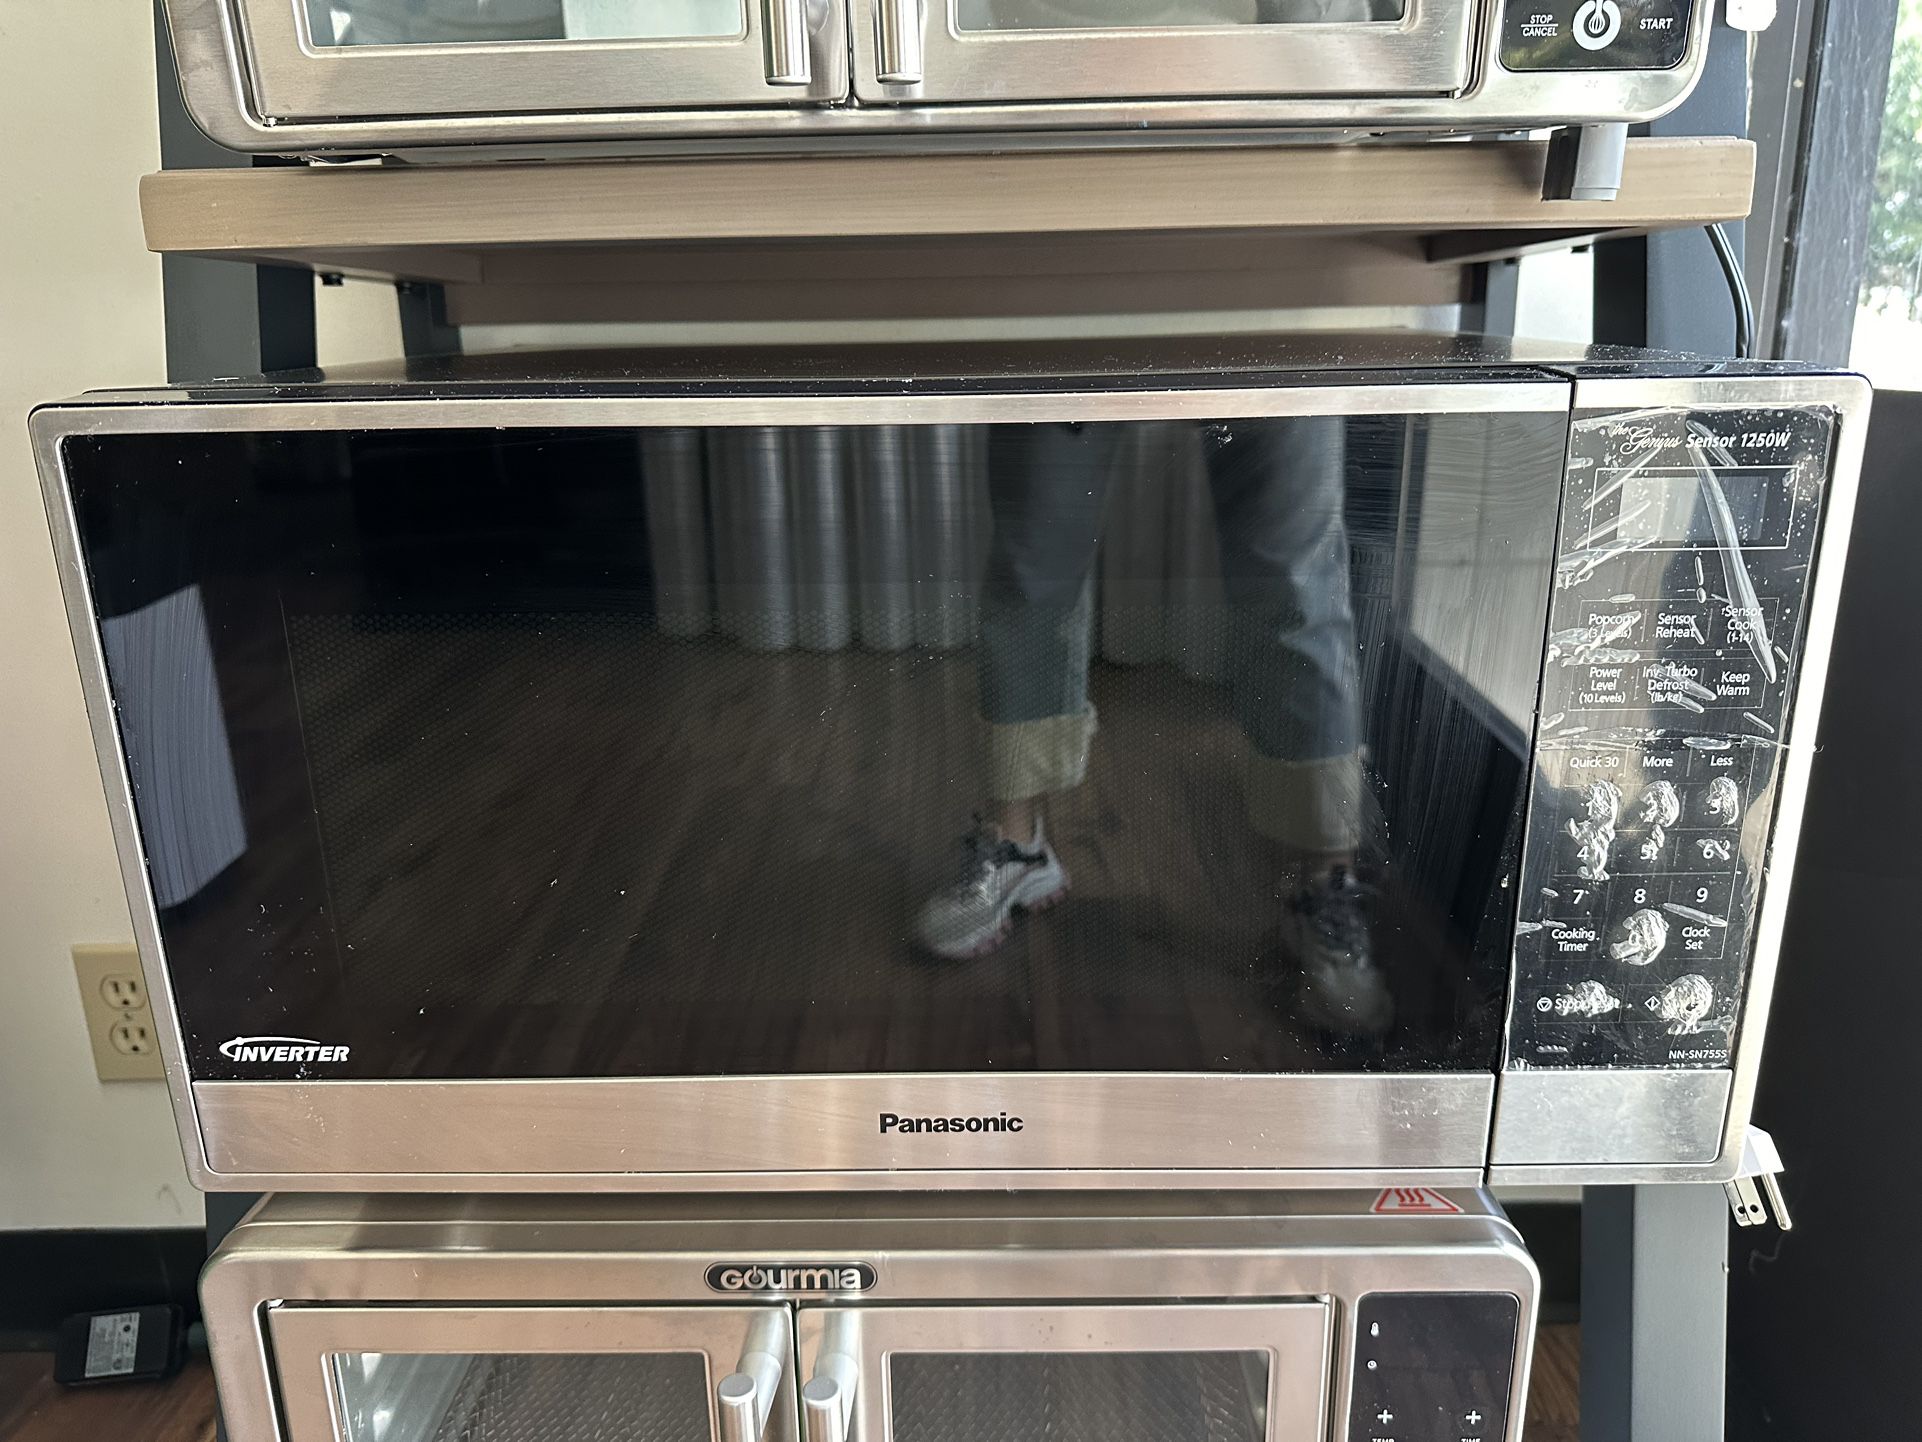 Microwave Kitchen: $70 